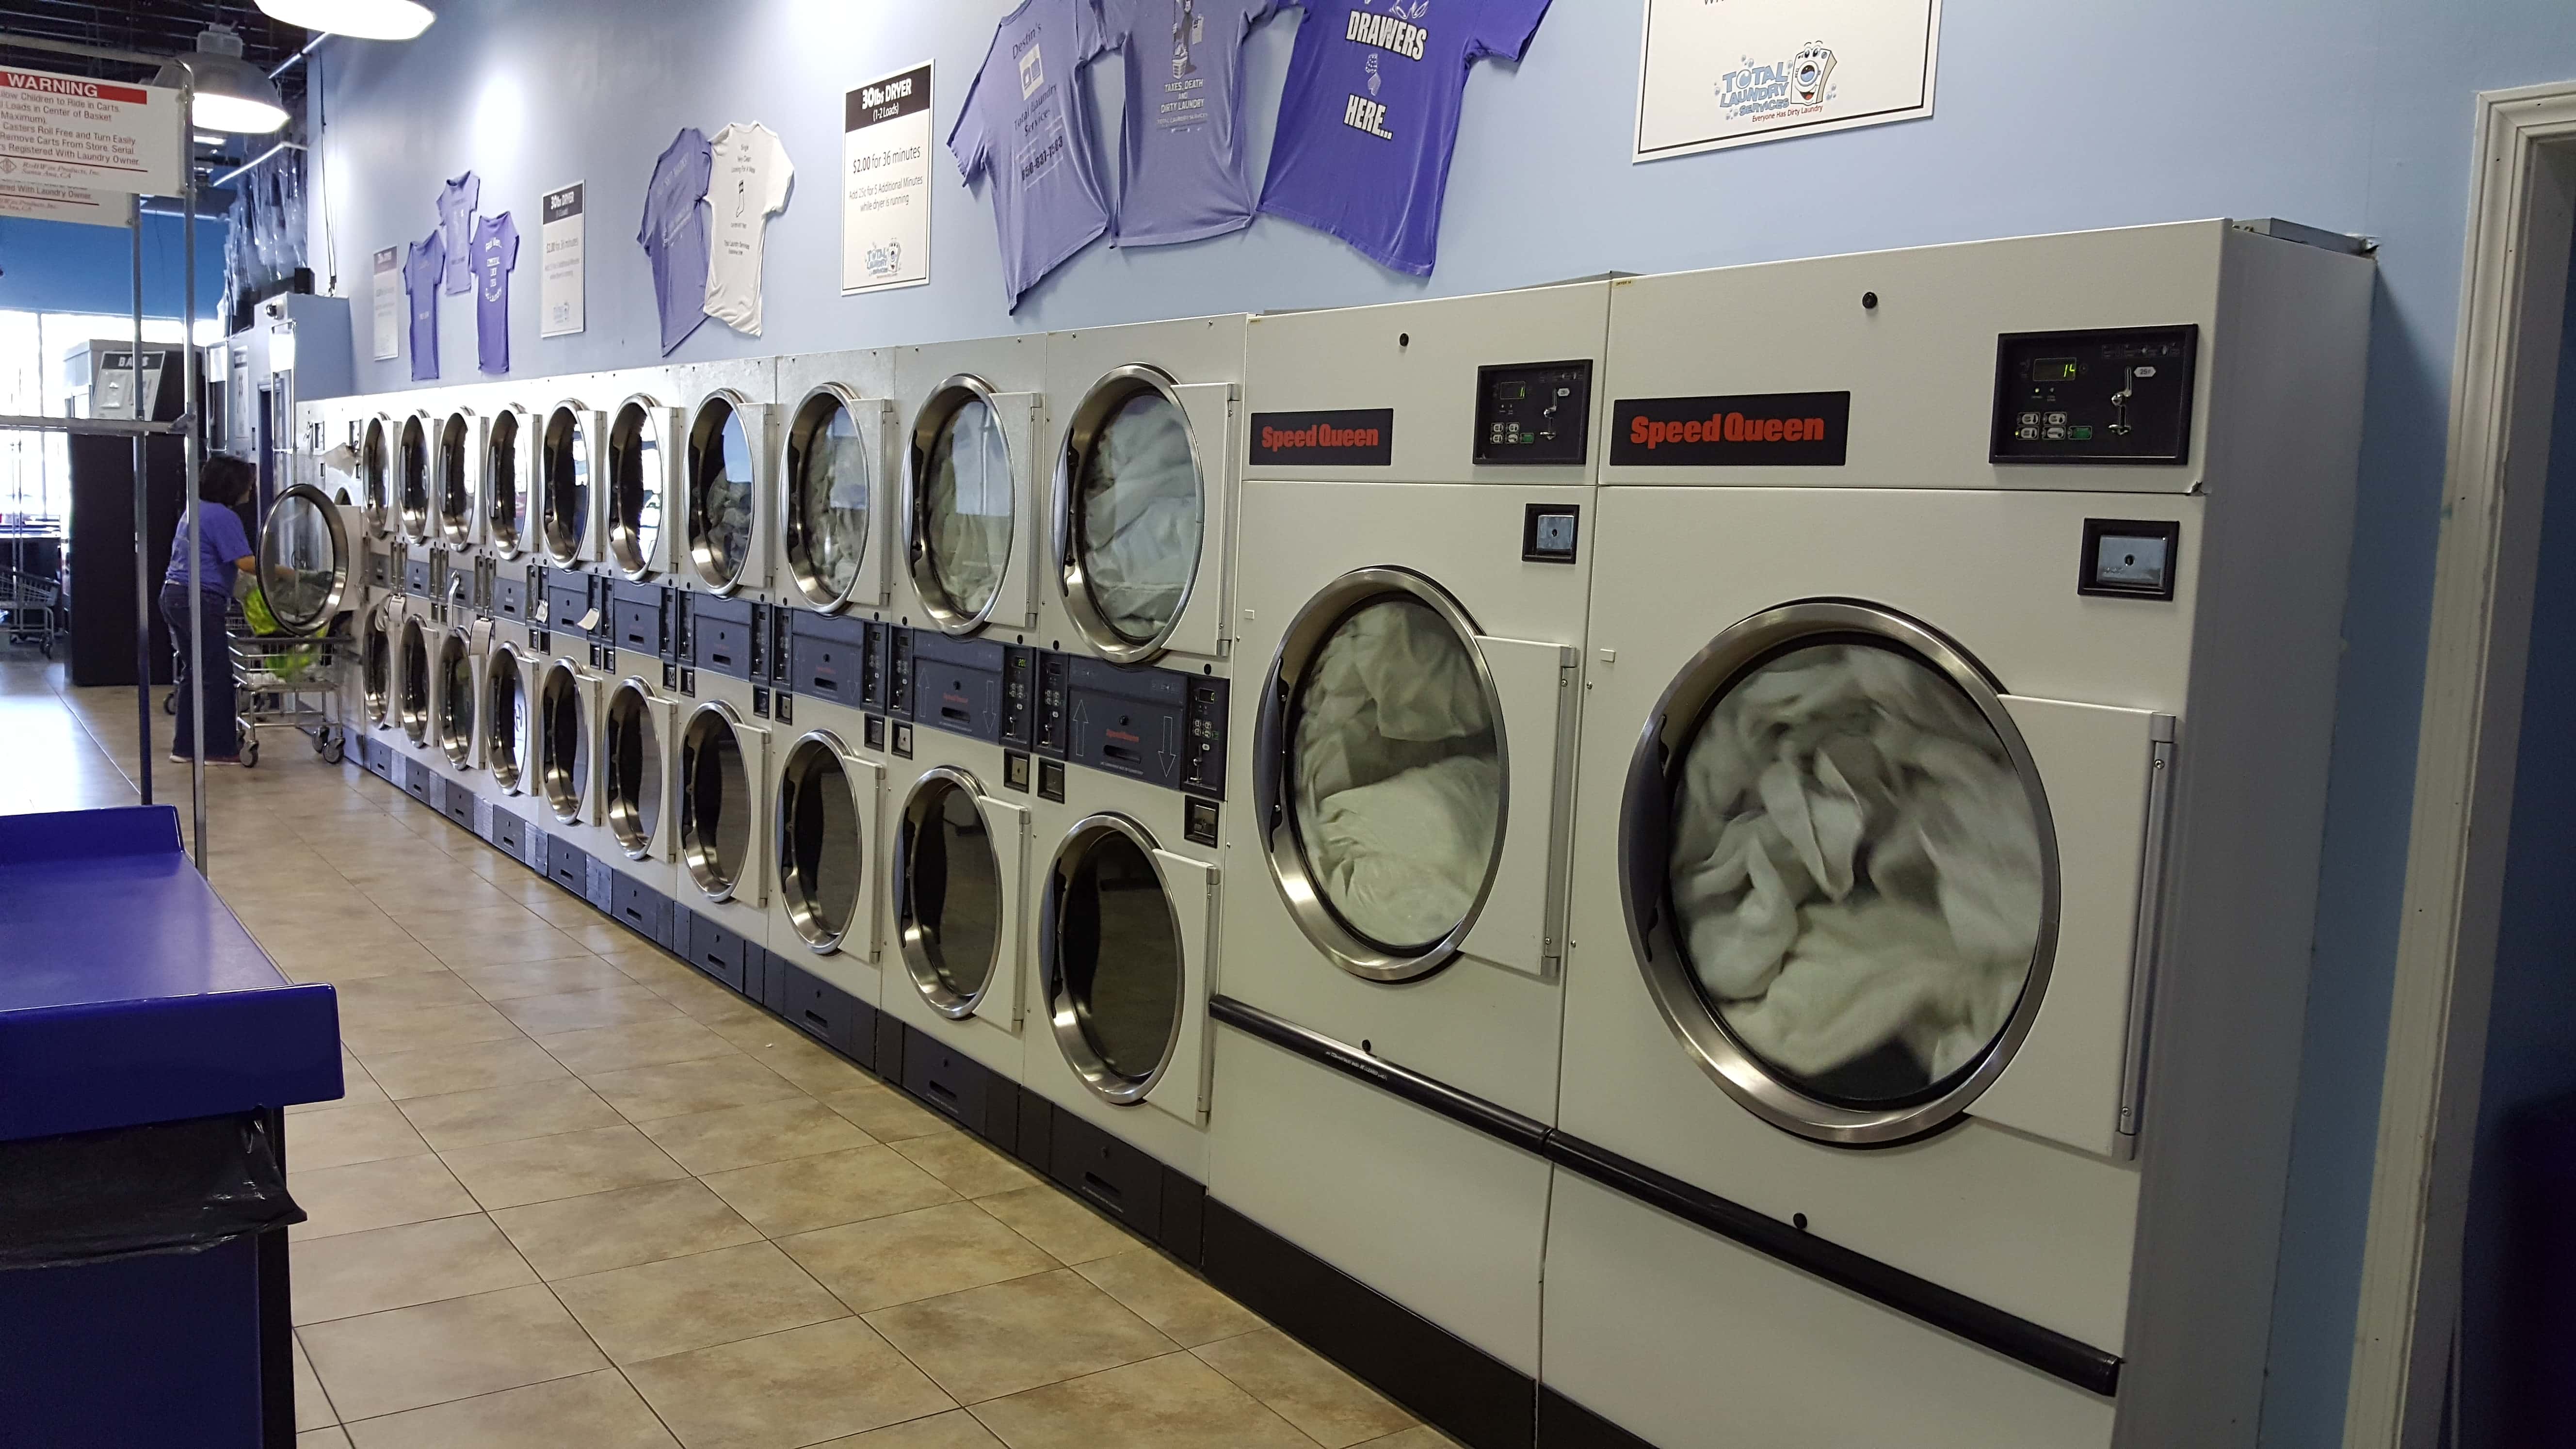 Destin's Total Laundry Services, US, 24 hour laundry